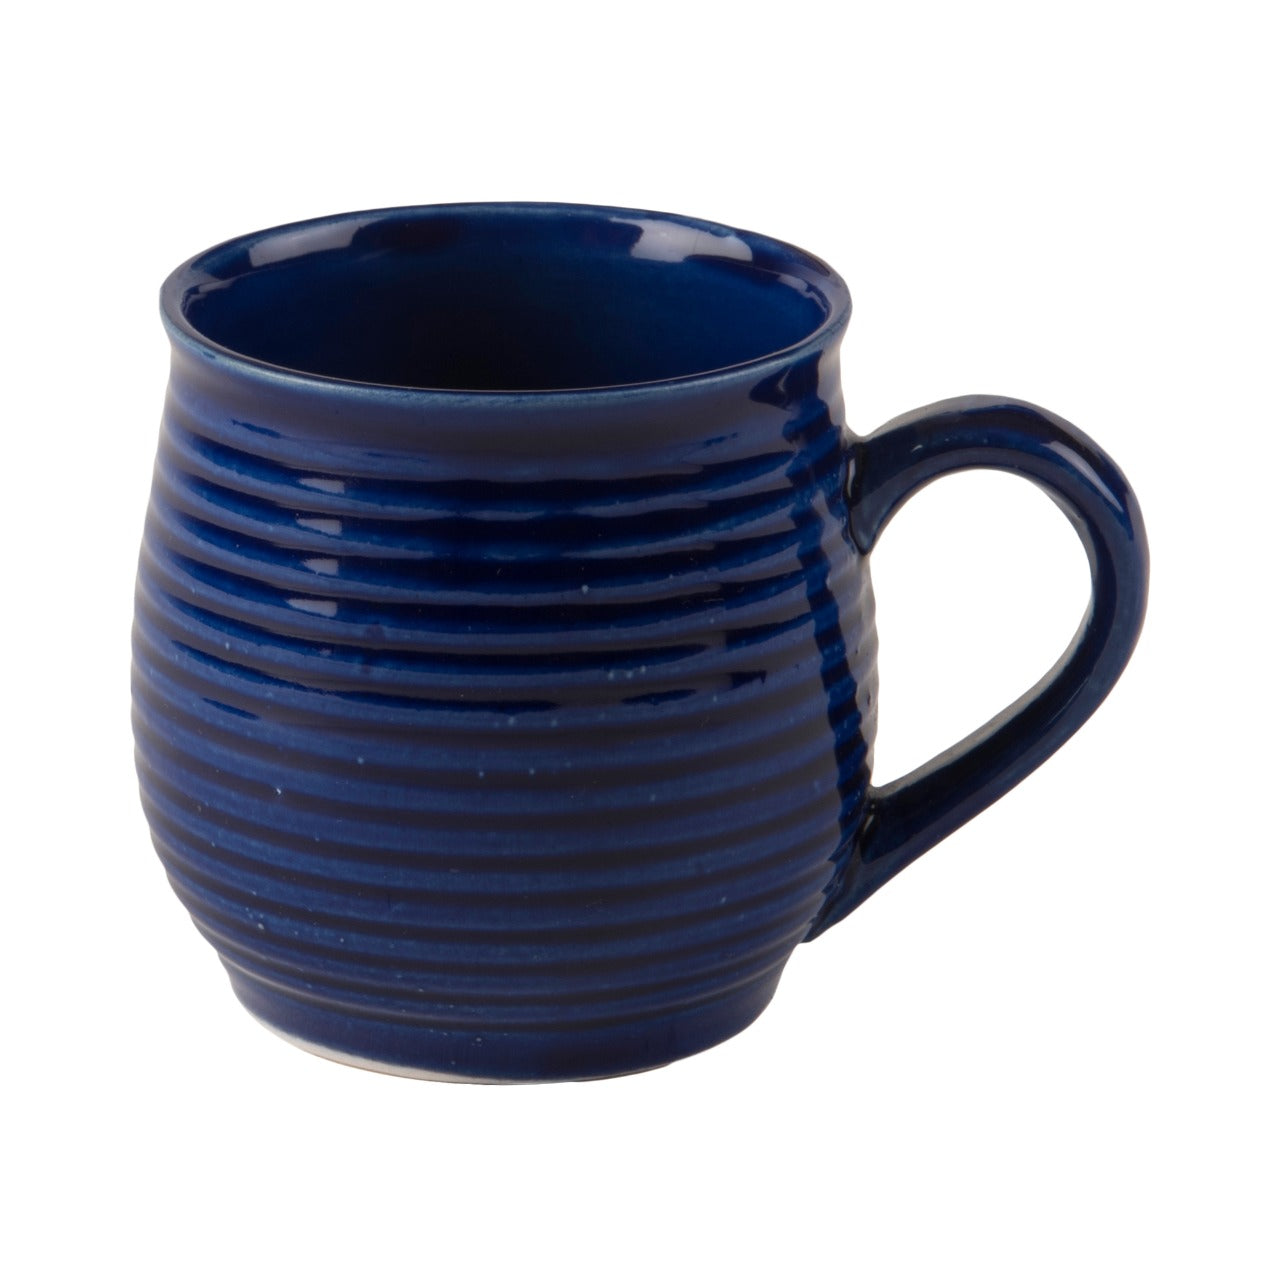 Blue Tea Mugs